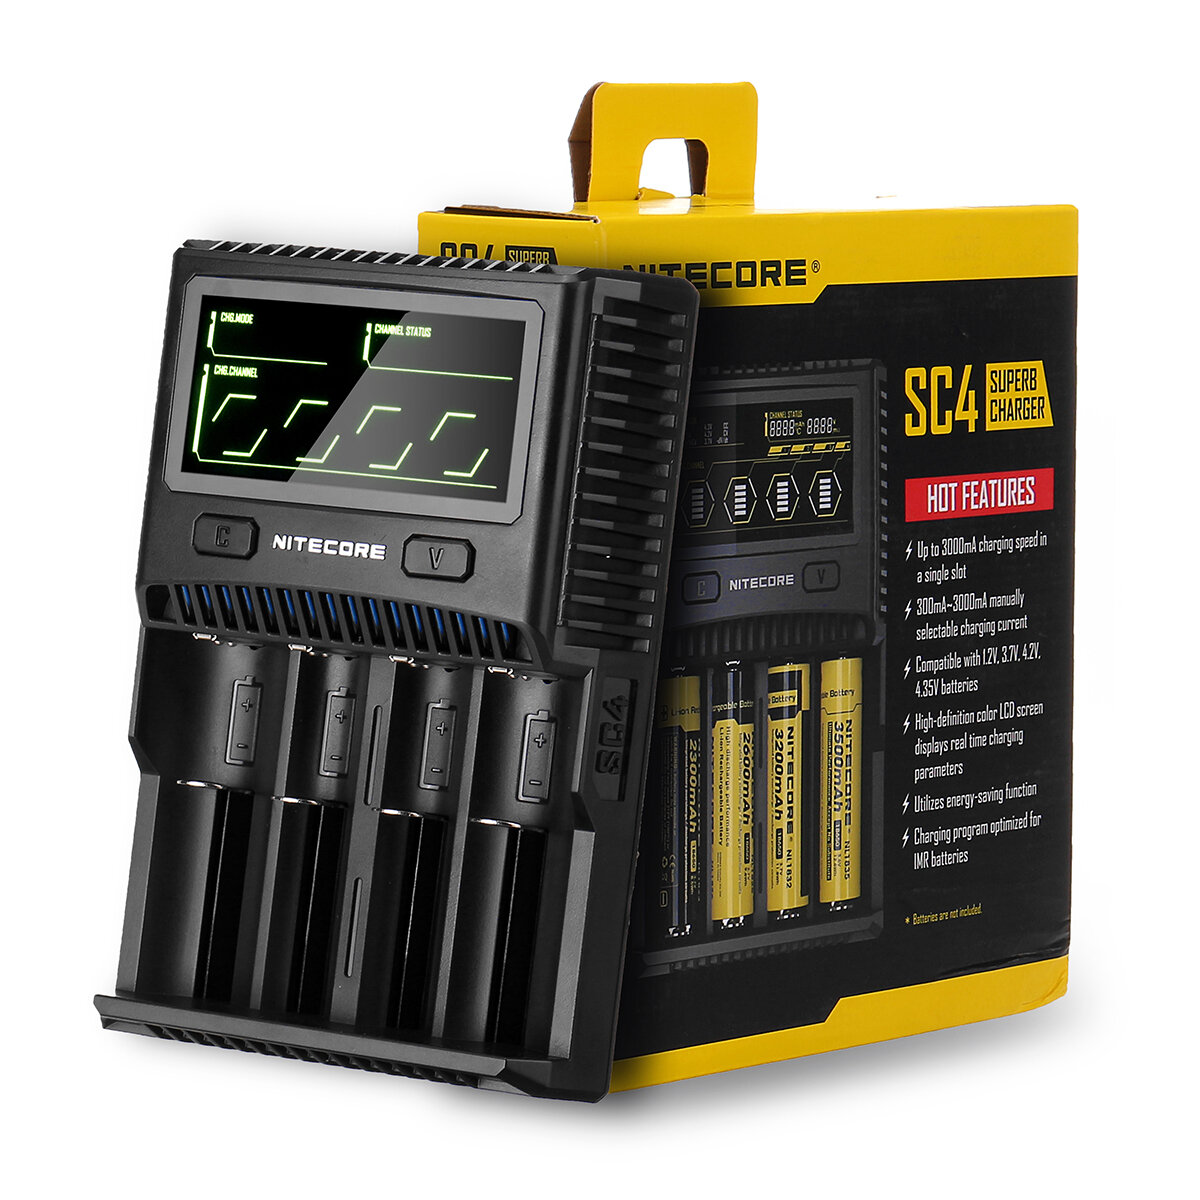 Caricabatterie intelligente Nitecore SC4 3A di carica rapida con display LCD per batterie Li-ion IMR LiFePO4 per torce,